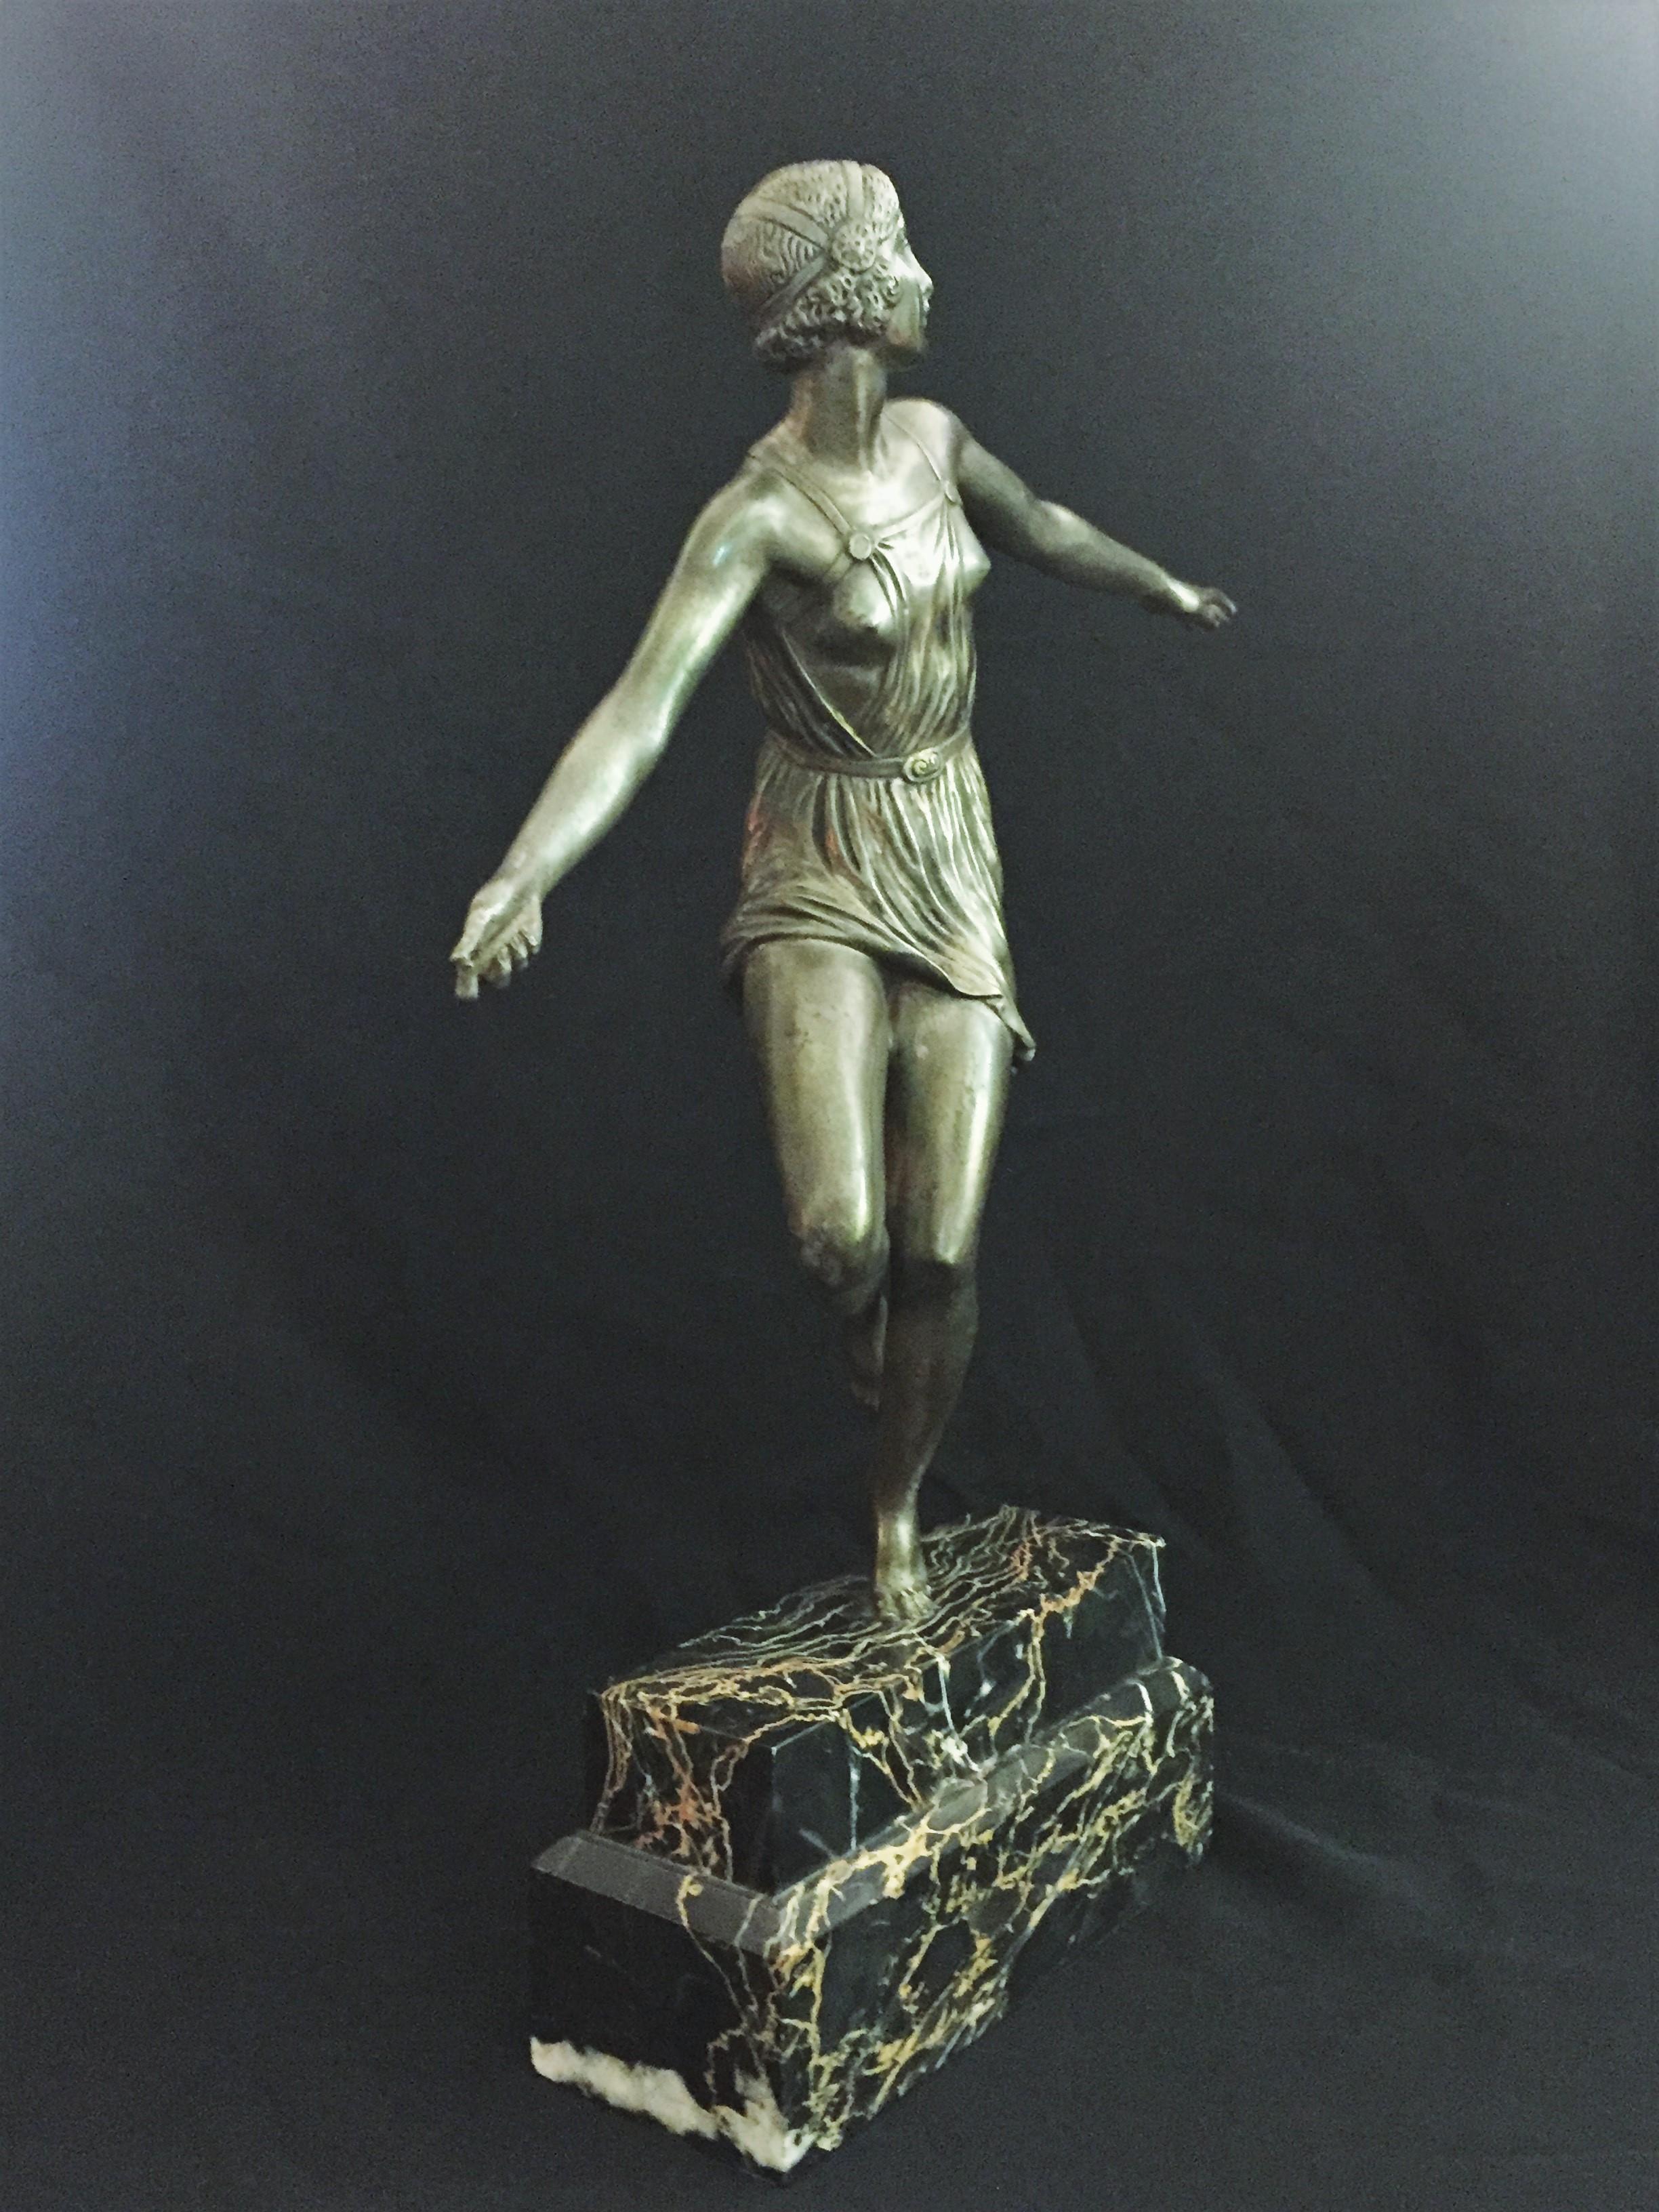 Belle grande sculpture française en bronze argenté représentant une danseuse érotique semi-nue, signée dans le bronze : Josselin.

Base originale en marbre portorro. 

Dimensions : H 15,25